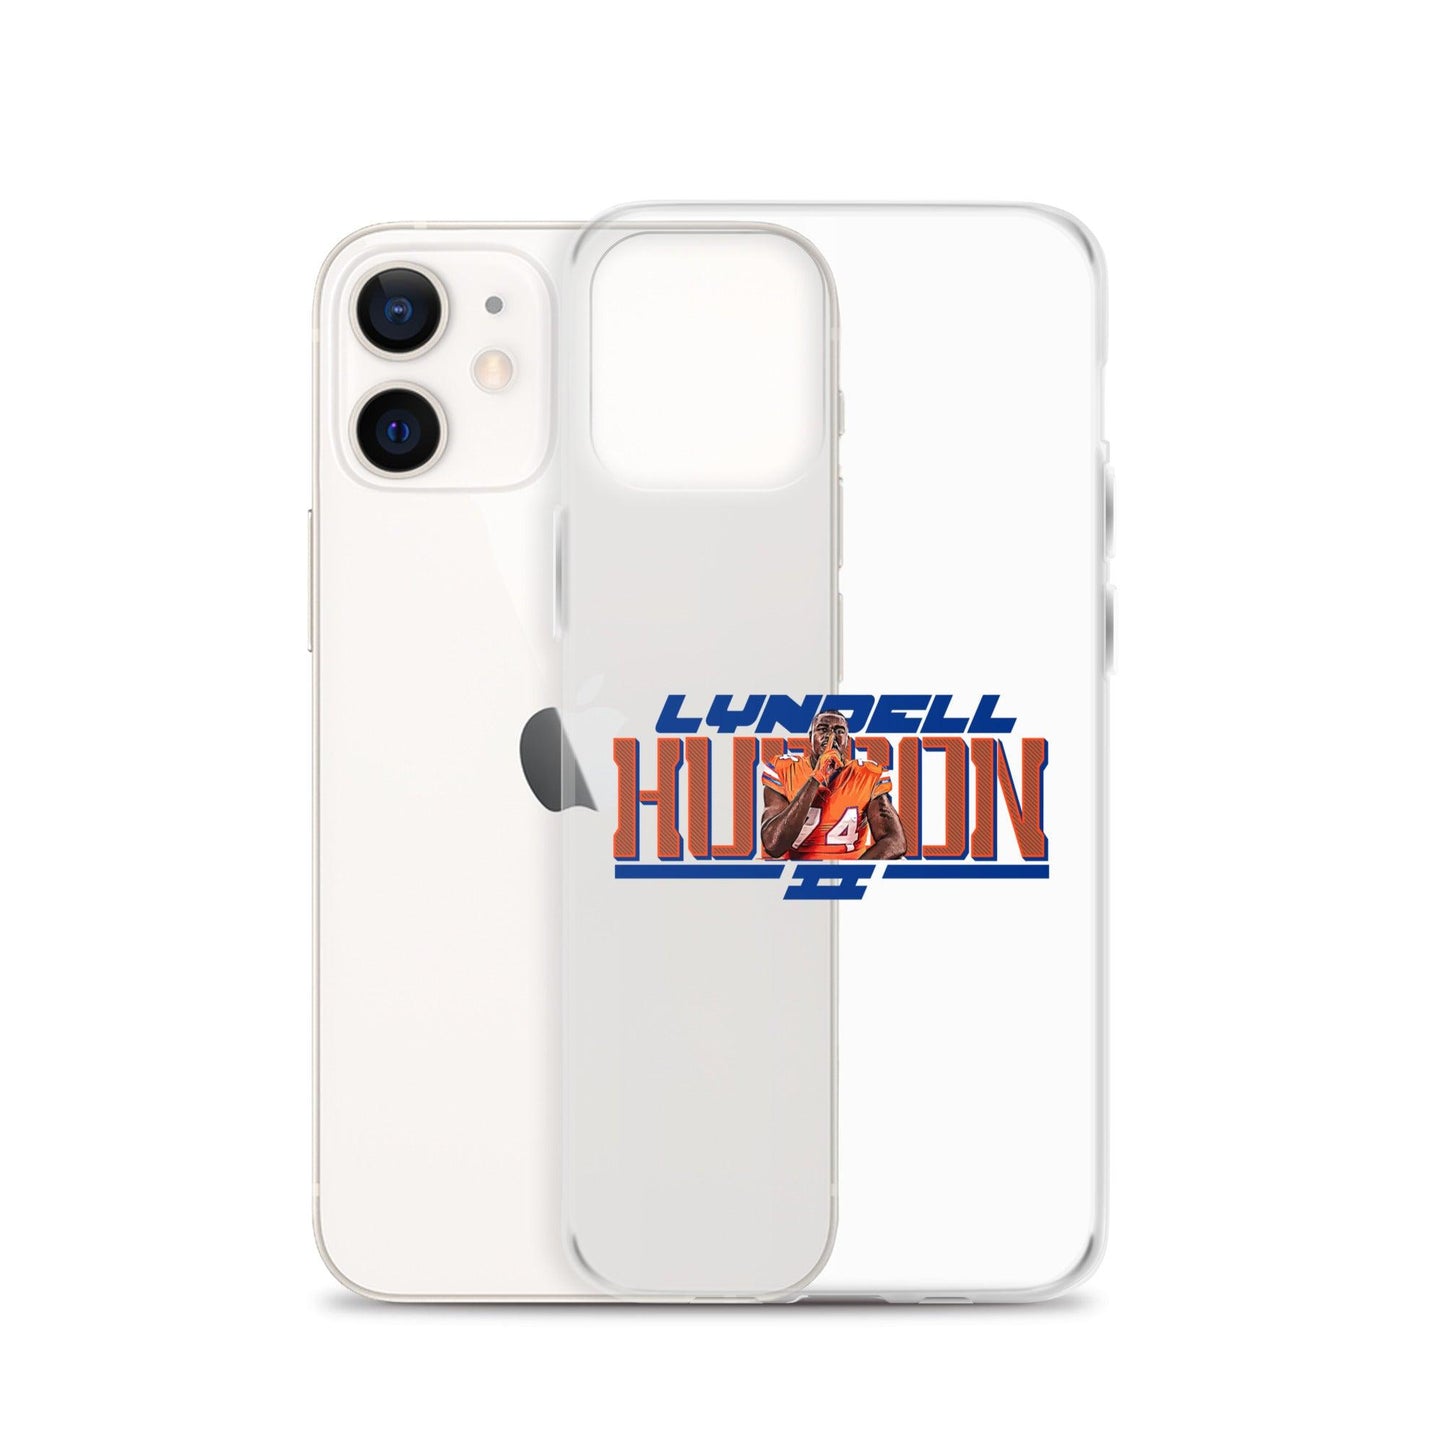 Lyndell Hudson II "Gameday" iPhone® - Fan Arch